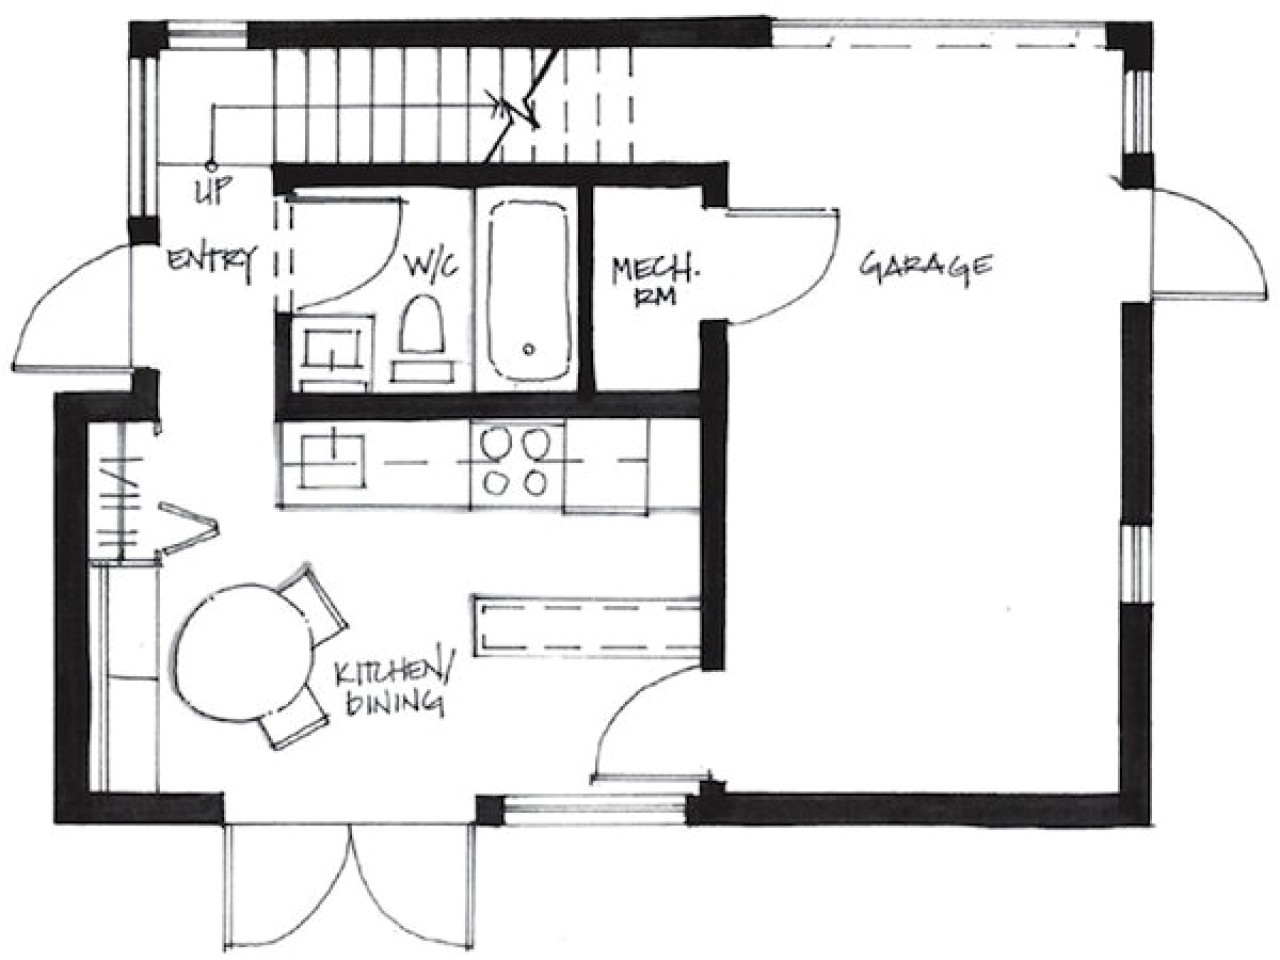 bda6624ba56c506e 500 sq ft cottage plans 500 sq ft tiny house floor plans